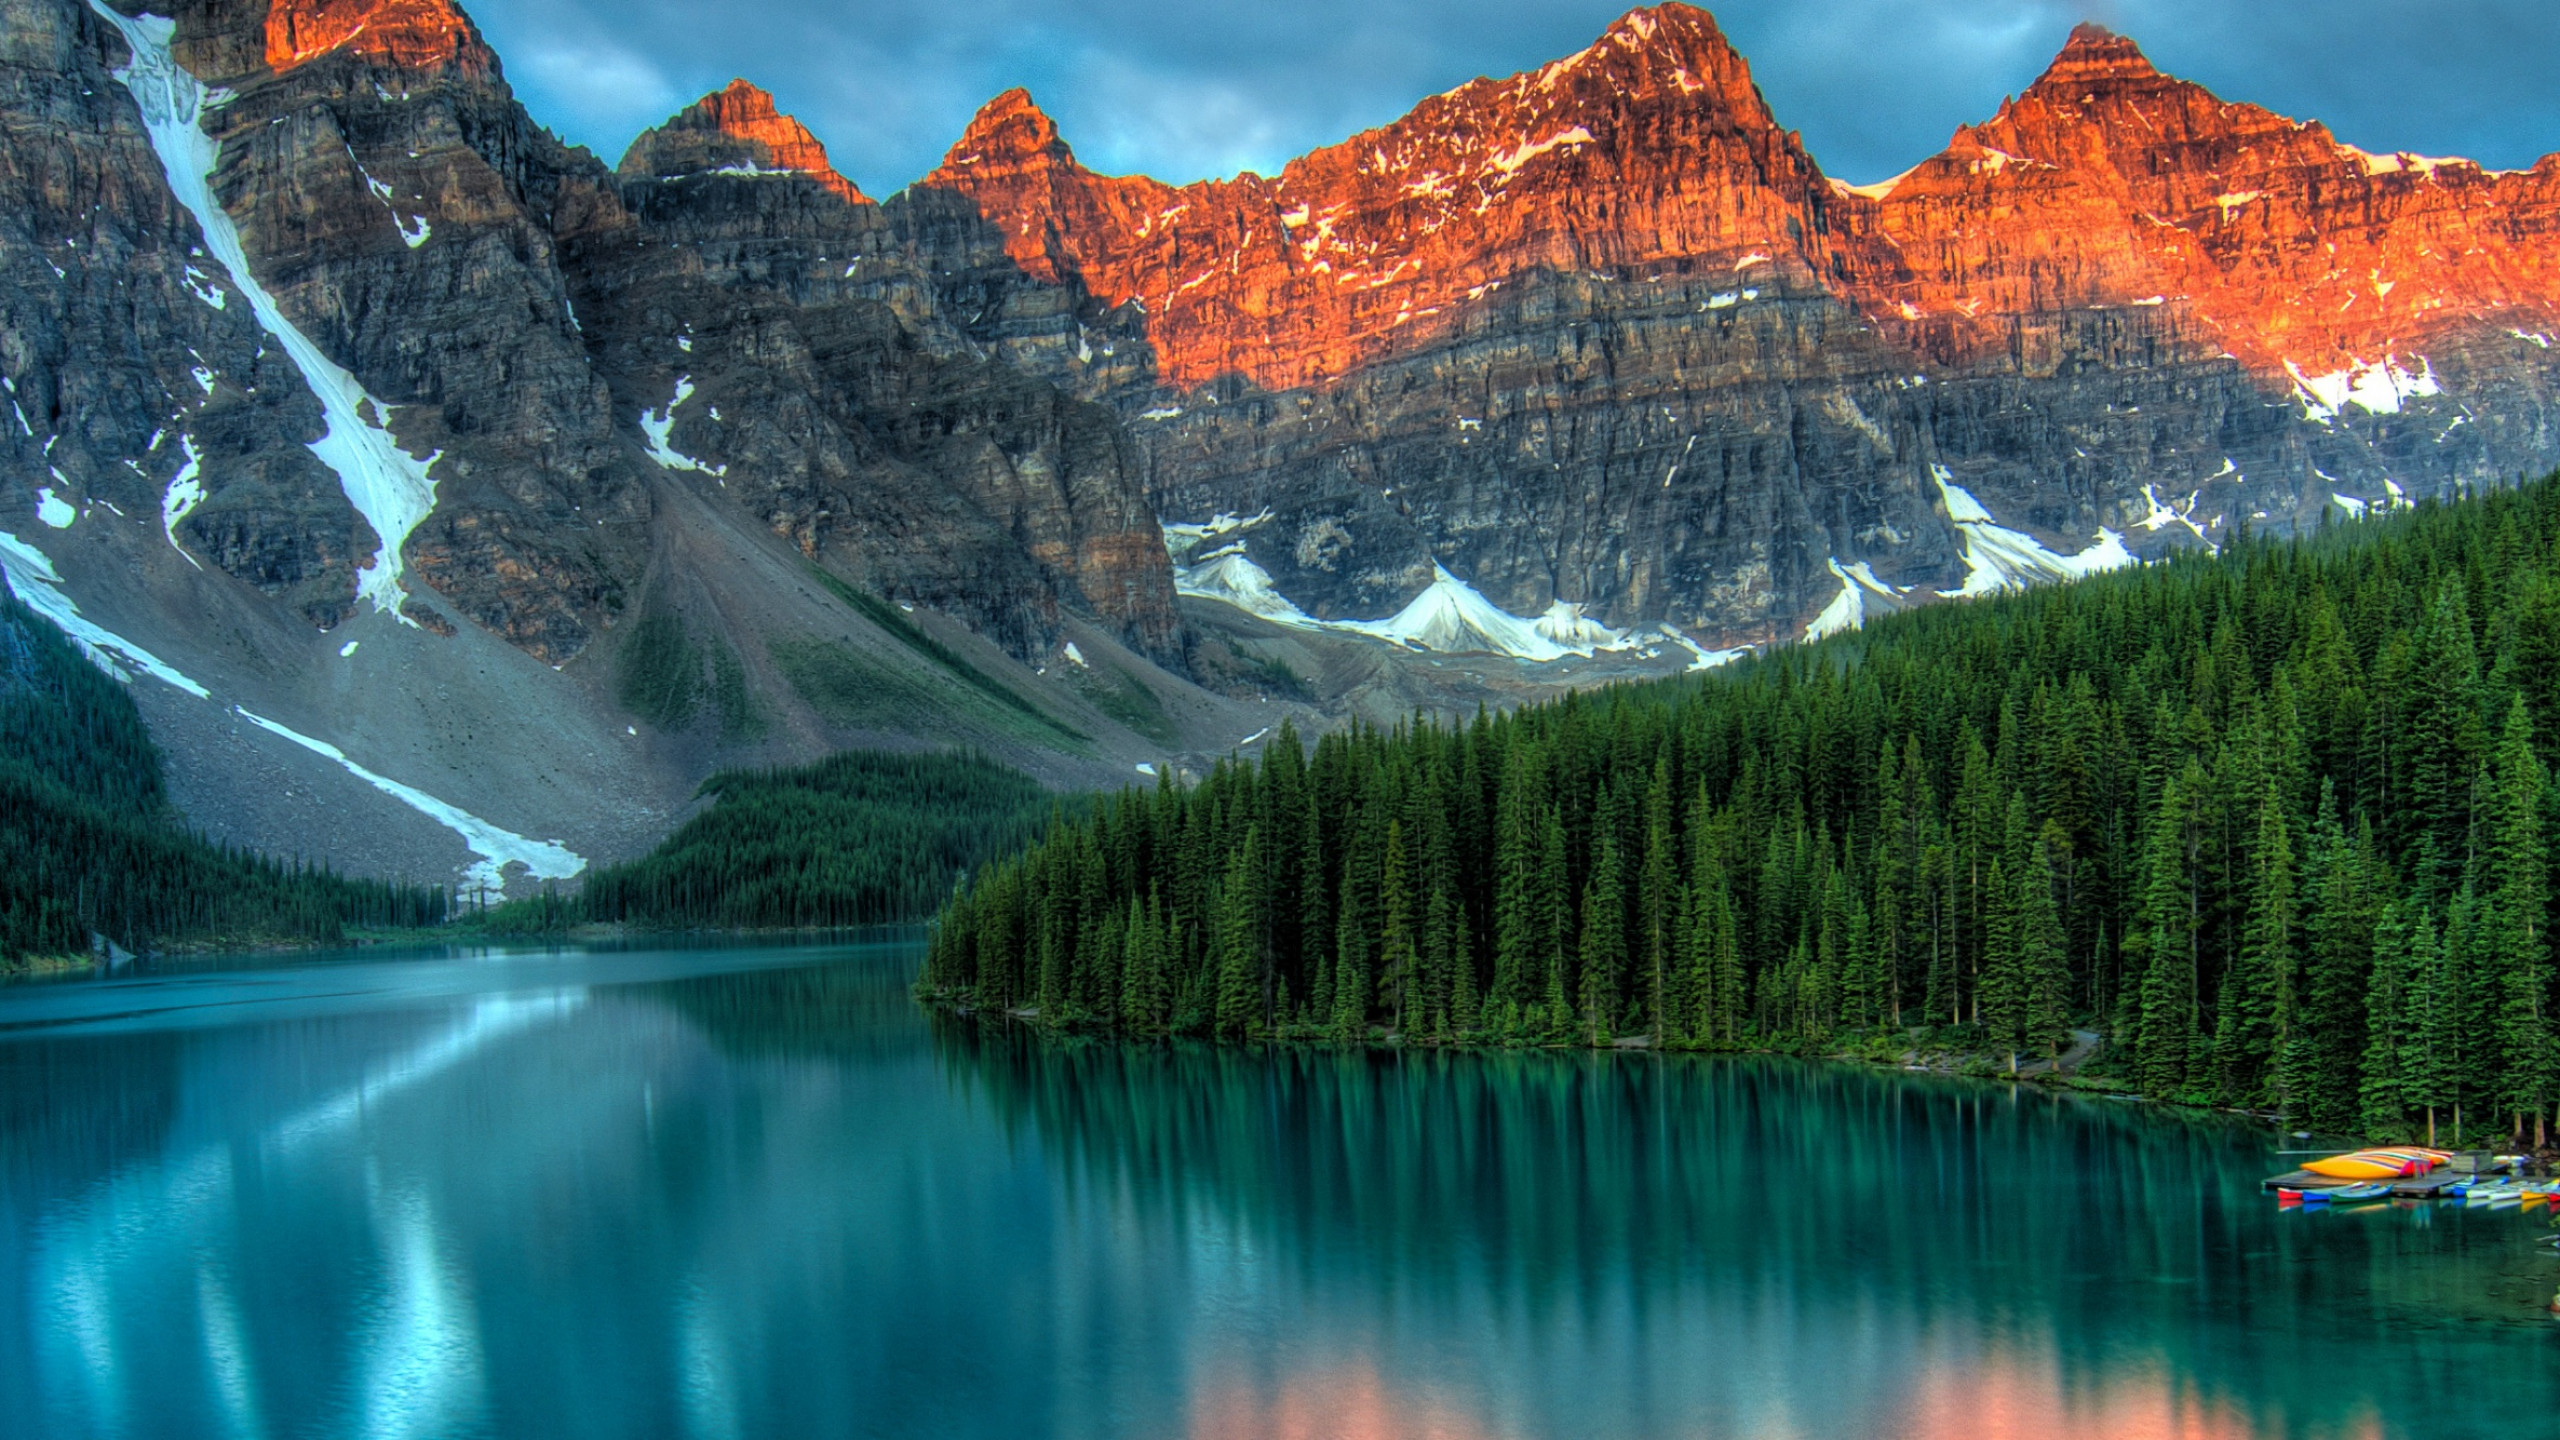 Bạn muốn trải nghiệm vẻ đẹp tự nhiên của Canada tuyệt đẹp trong hình nền 4K? Hình nền 4K Canada sẽ đưa bạn đến với cảnh quan hùng vĩ của những ngọn núi tuyết phủ và hồ nước trong xanh. Hãy cùng thưởng thức và thưởng thức những khoảnh khắc đẹp nhất của tự nhiên trong hình nền 4K Canada.